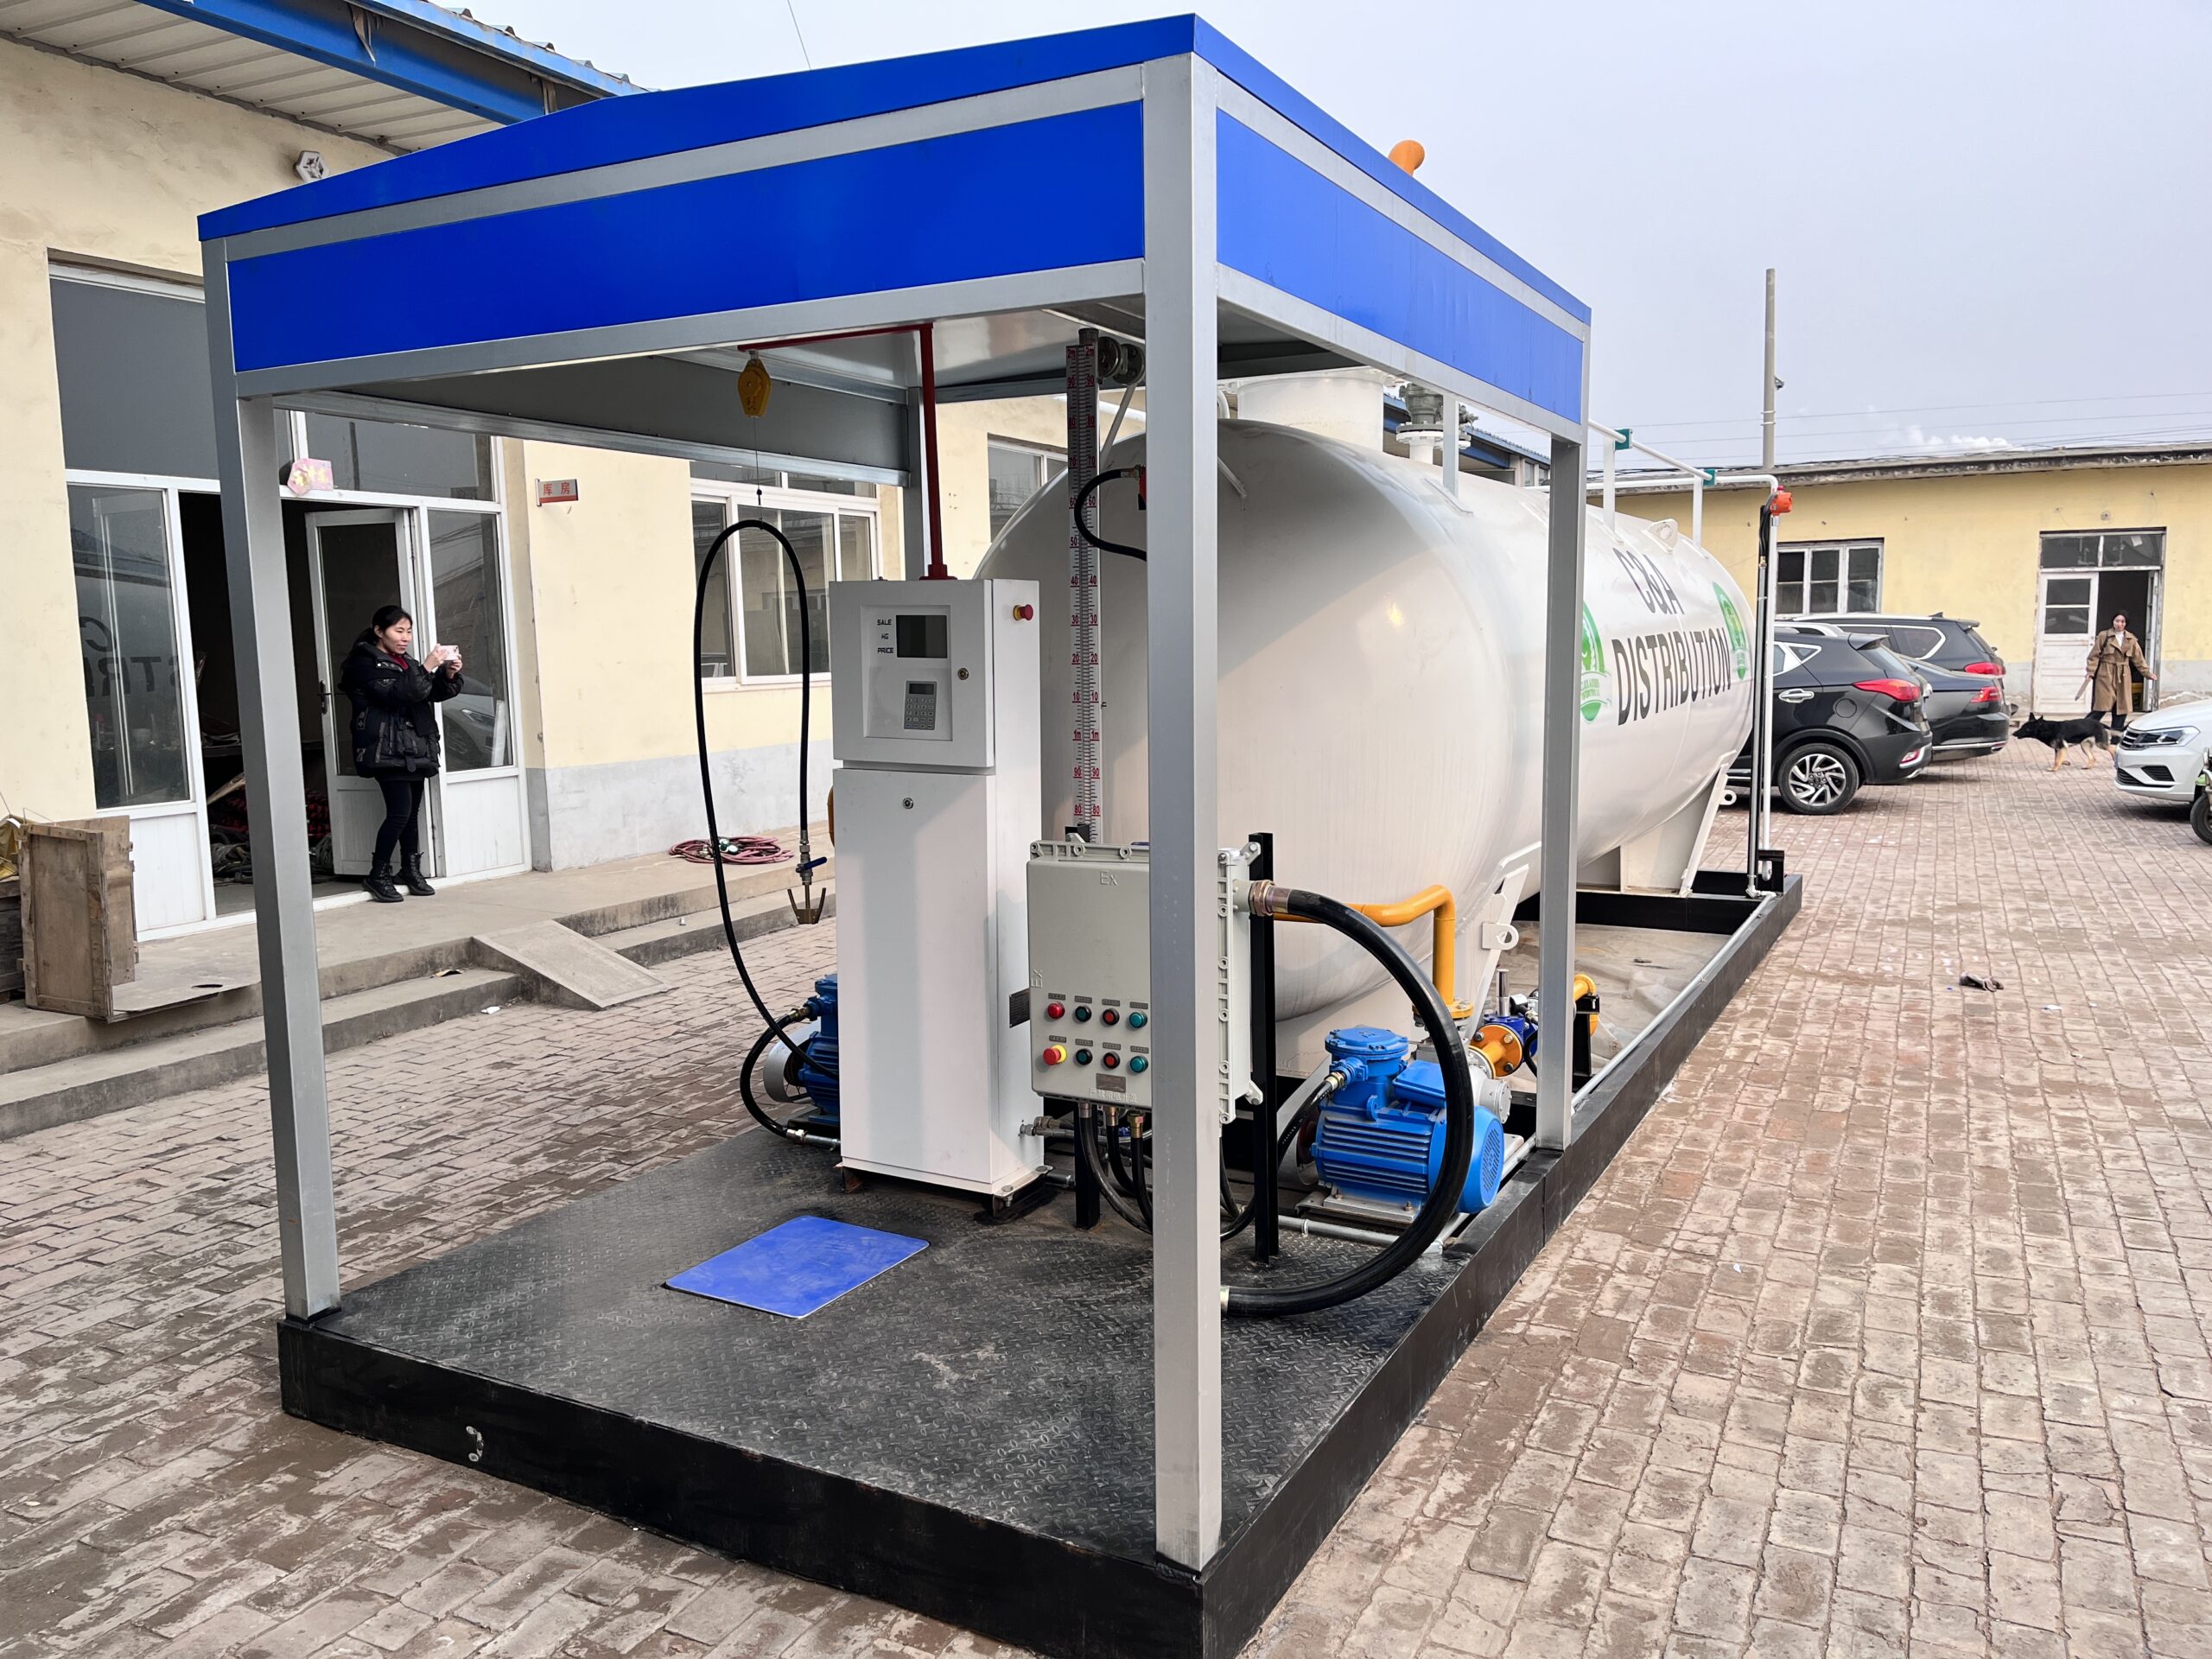 LPG filling station for vehicle in Kenya